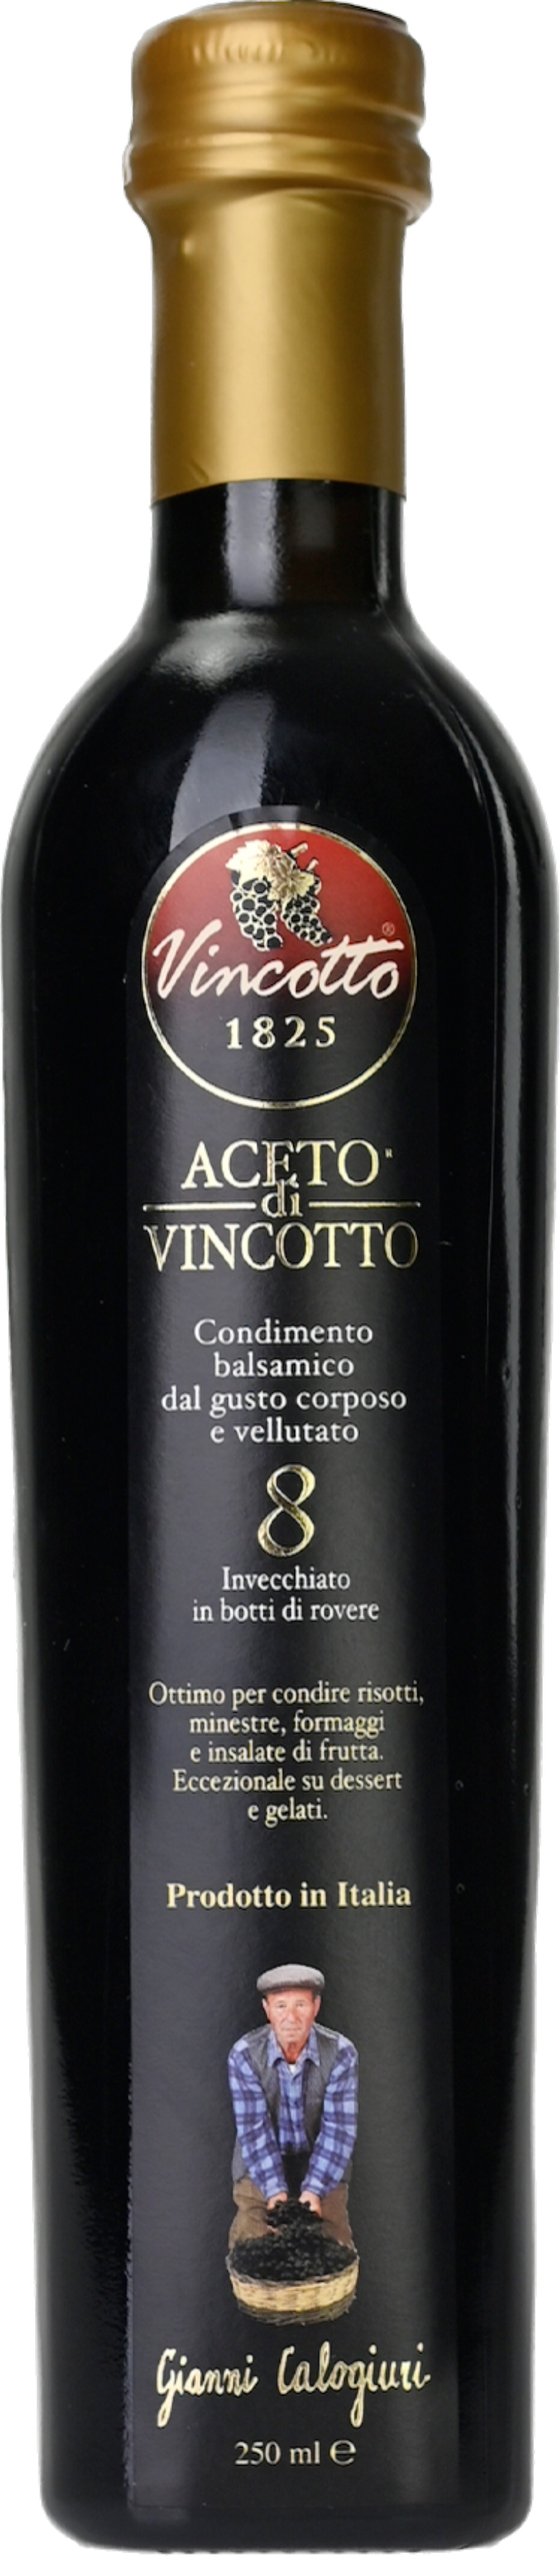 Aceto di Vincotto 8 Years 0,5l Gianni Calogiuri